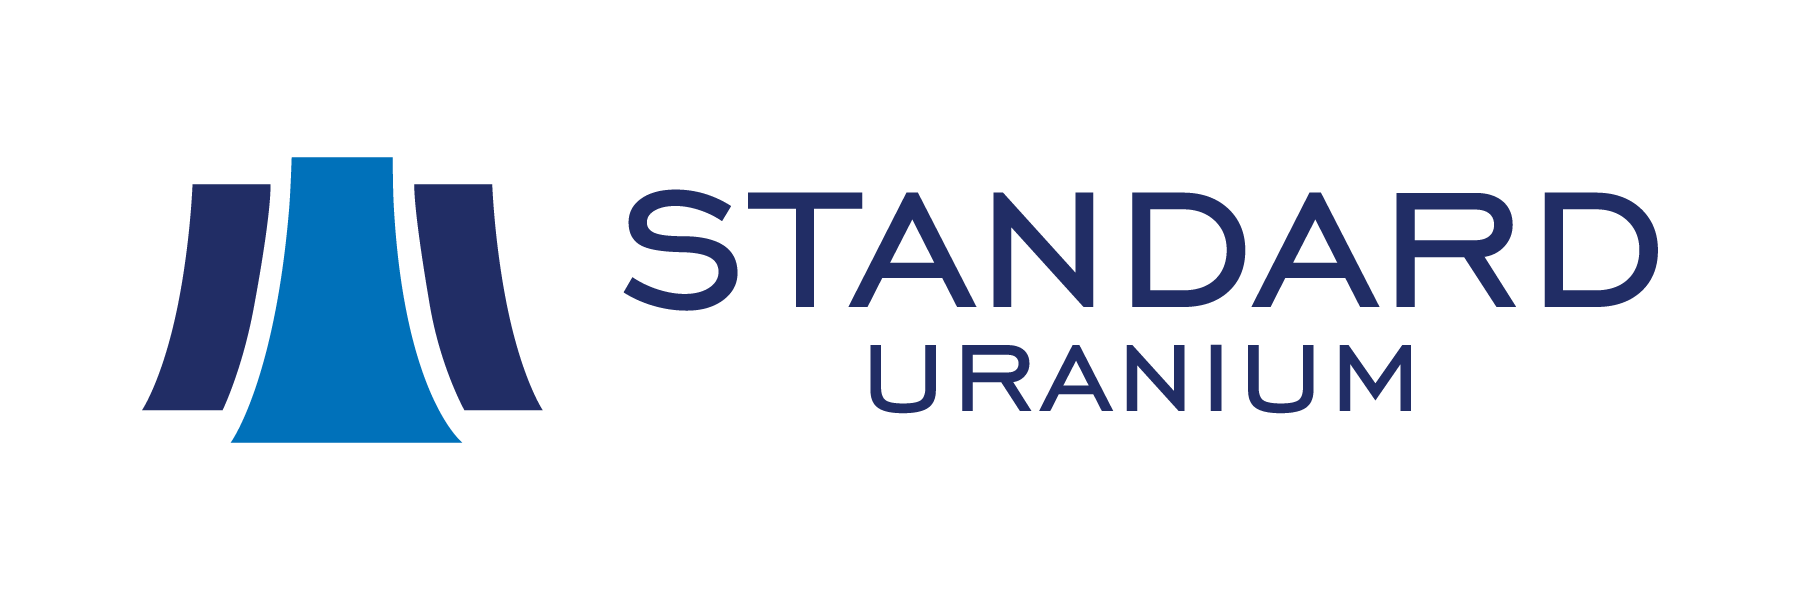 Standard Uranium App